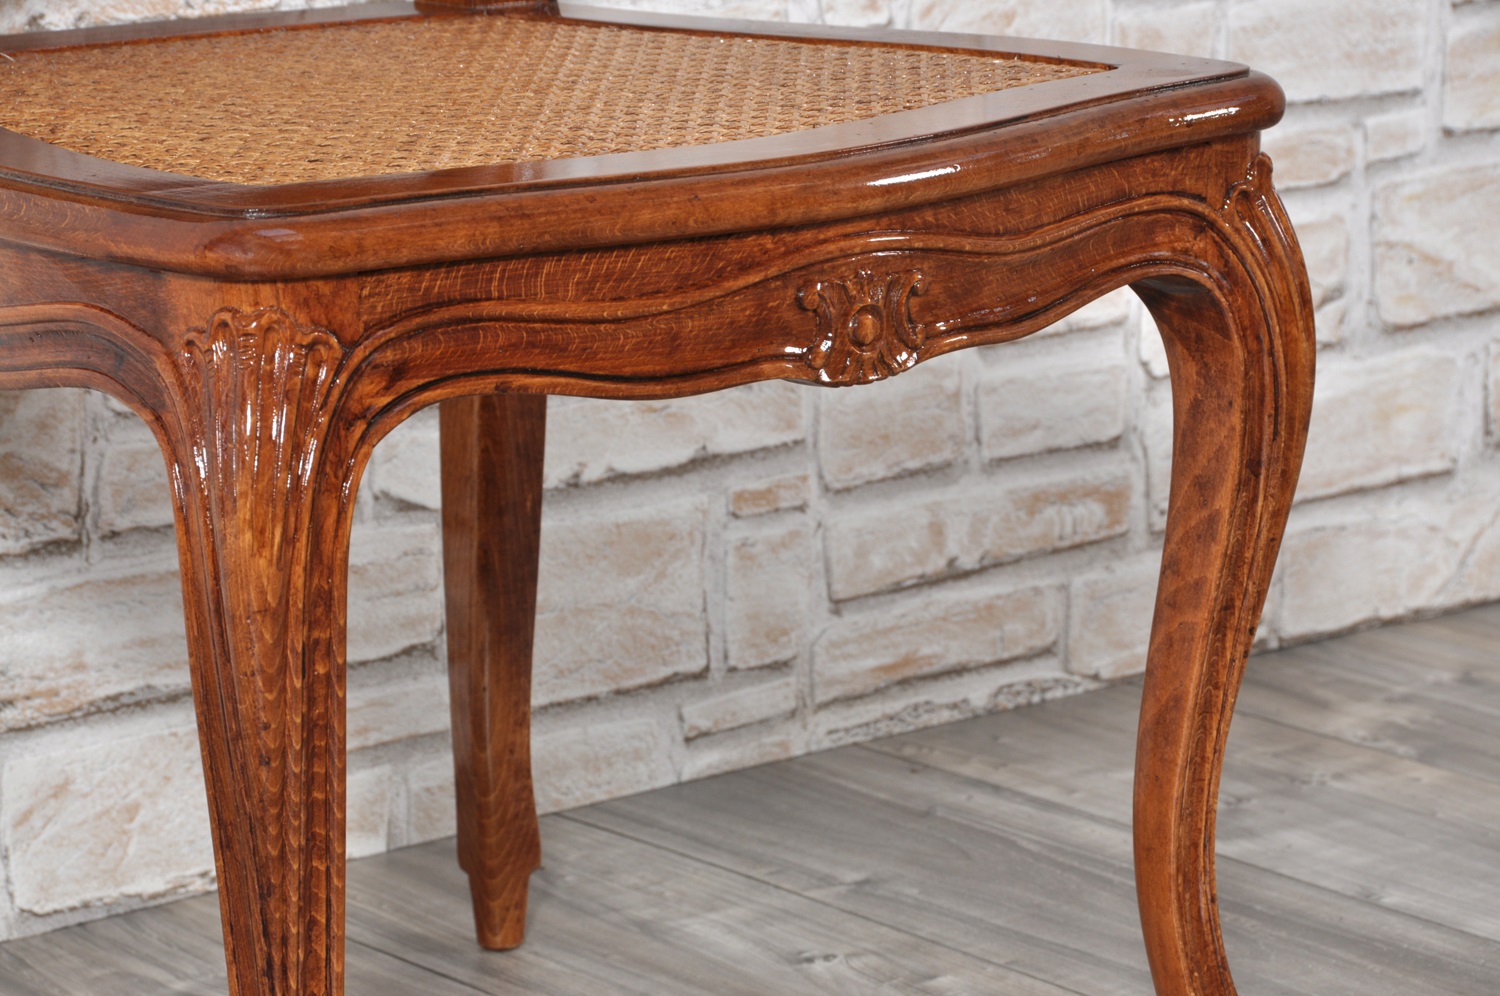 raffinata sedia in stile Luigi XV intagliata, sagomata e scolpita a mano in legno nobile e pregiato